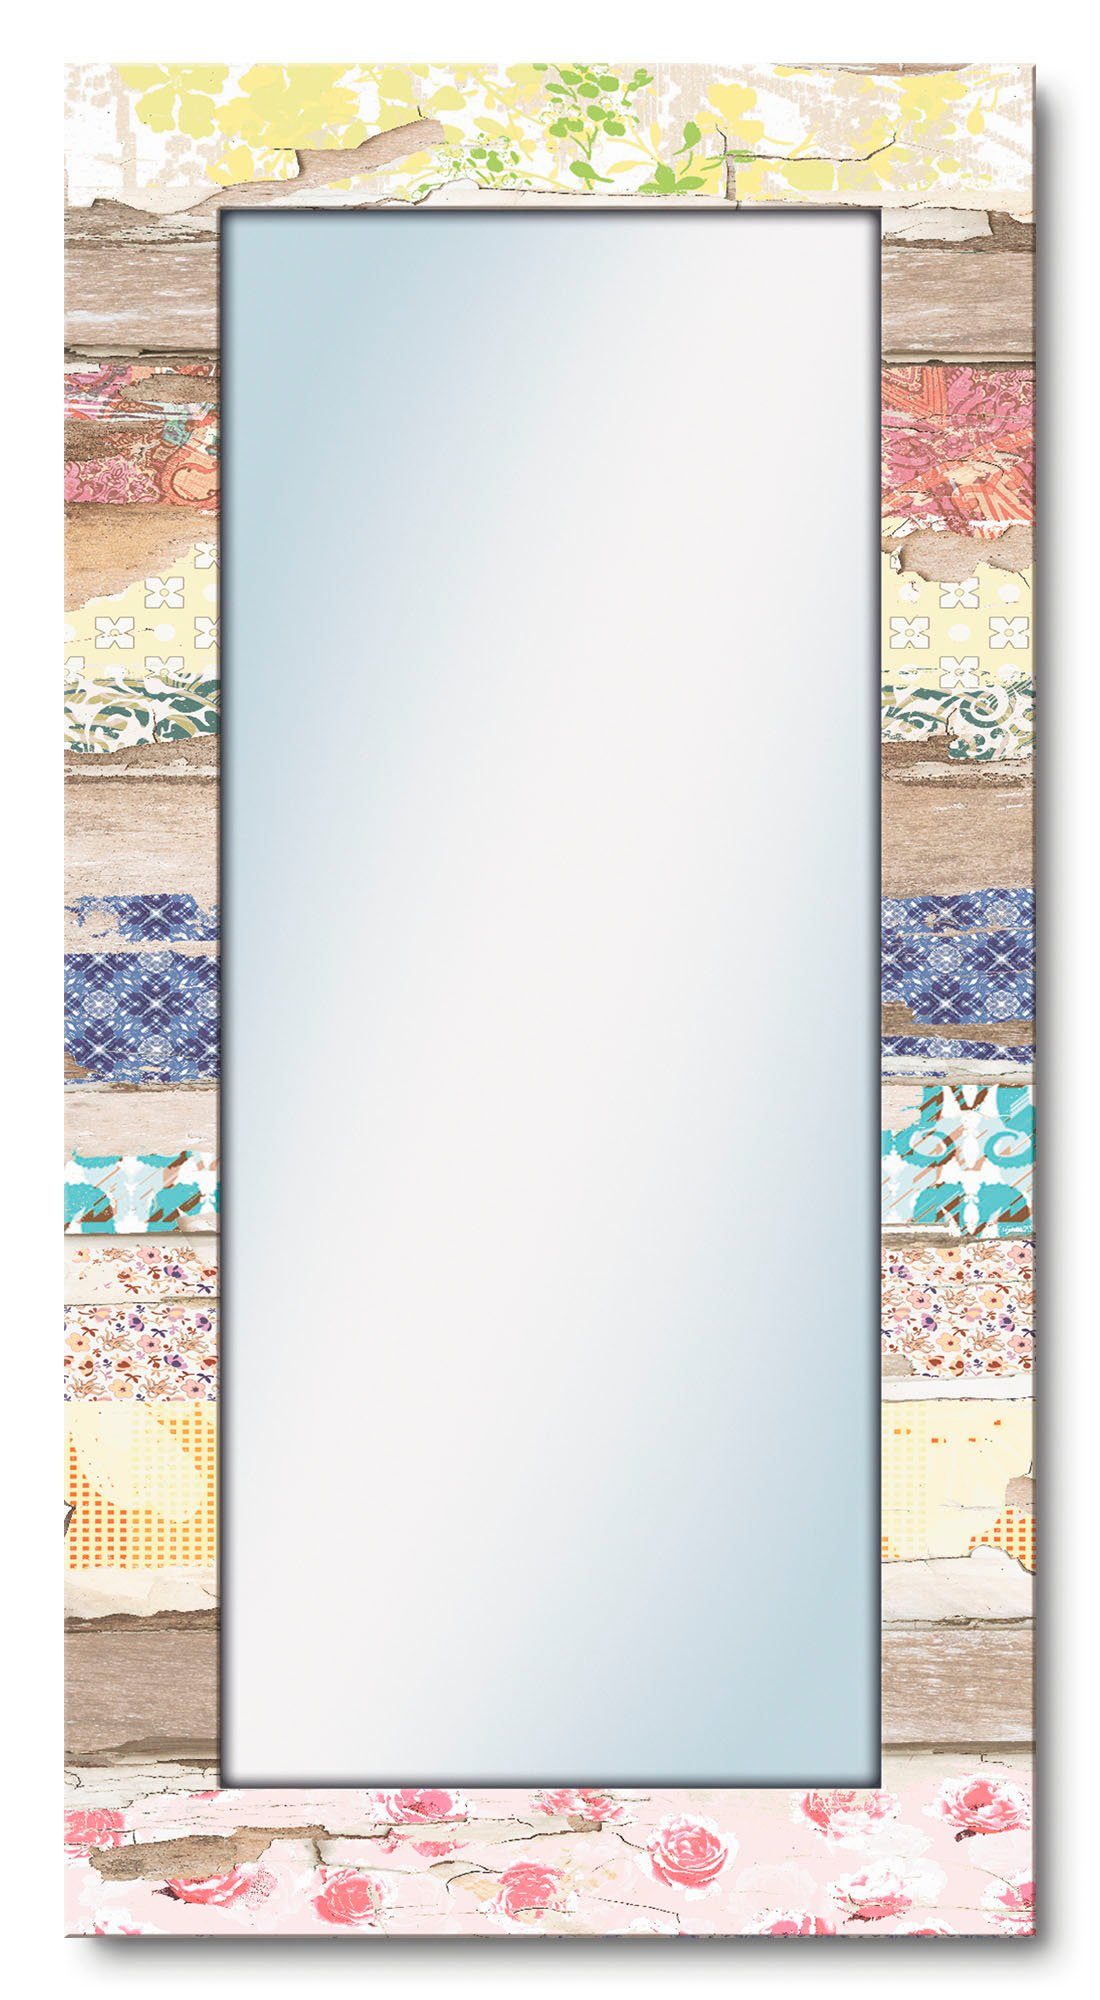 Artland Dekospiegel Verschiedene Muster auf Holz, gerahmter Ganzkörperspiegel, Wanspiegel mit Motivrahmen, modern